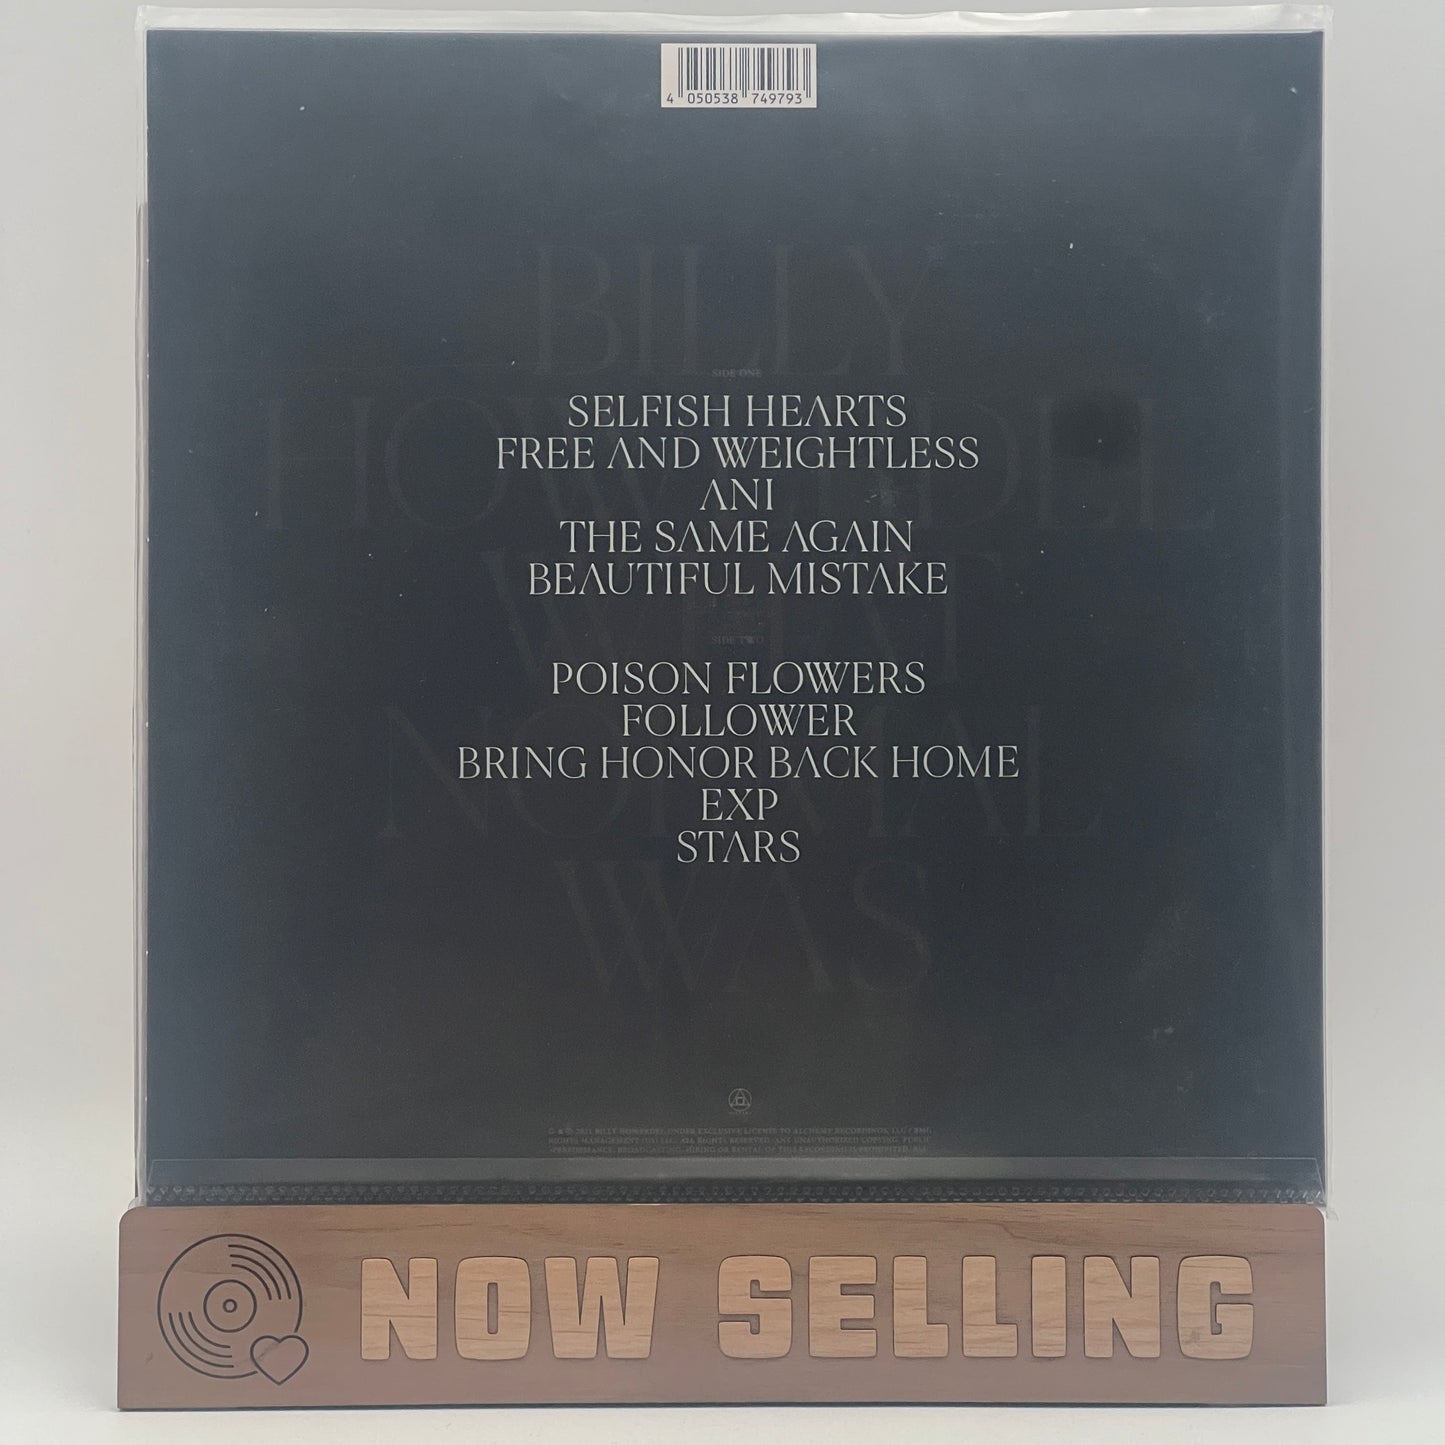 Billy Howerdel - What Normal Was Vinyl LP Black